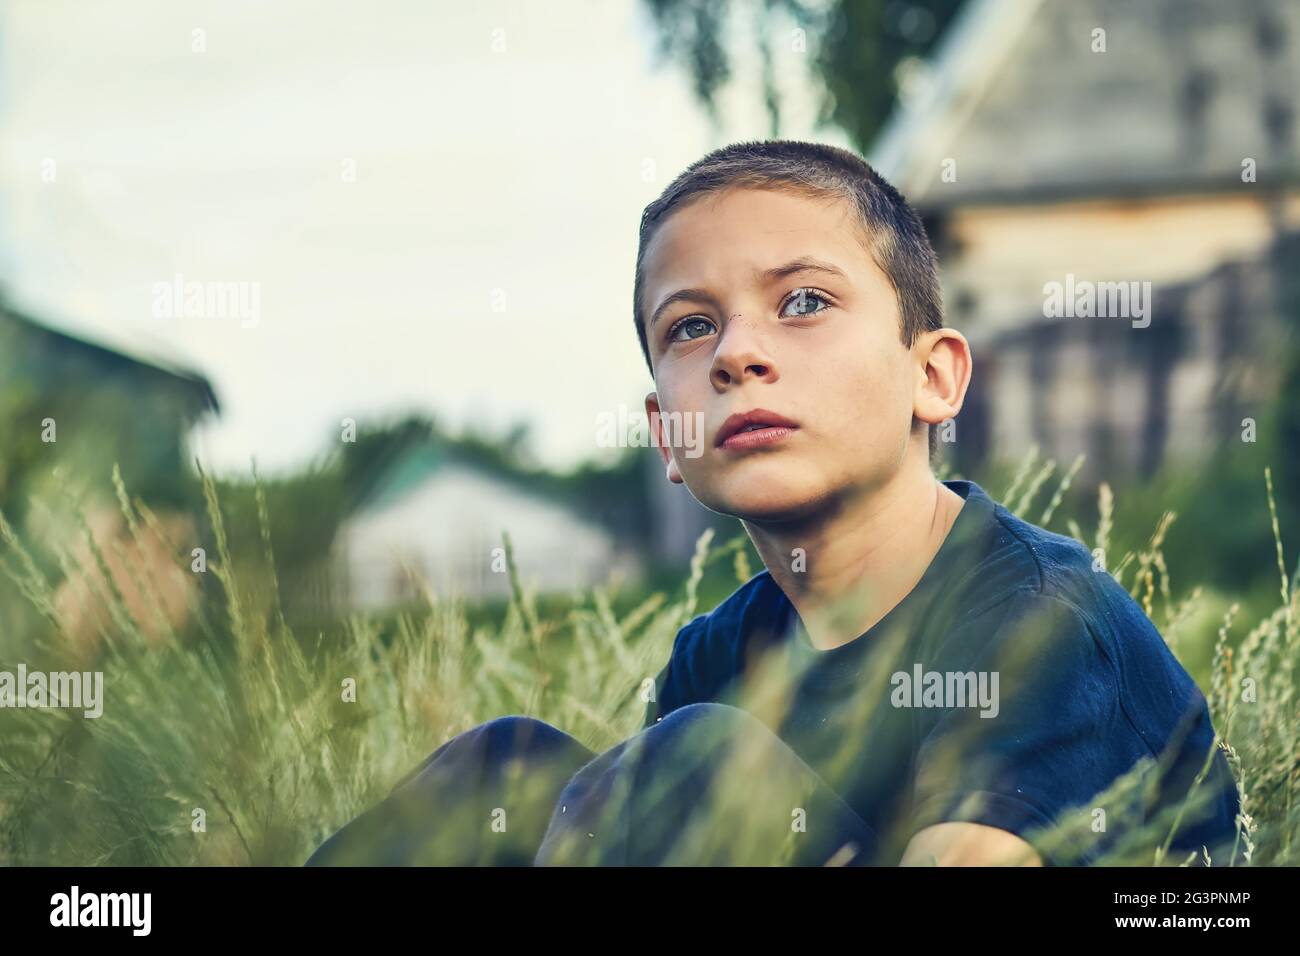 Das Kind sitzt im Gras im Freien und schaut ernsthaft in die Ferne. Stockfoto